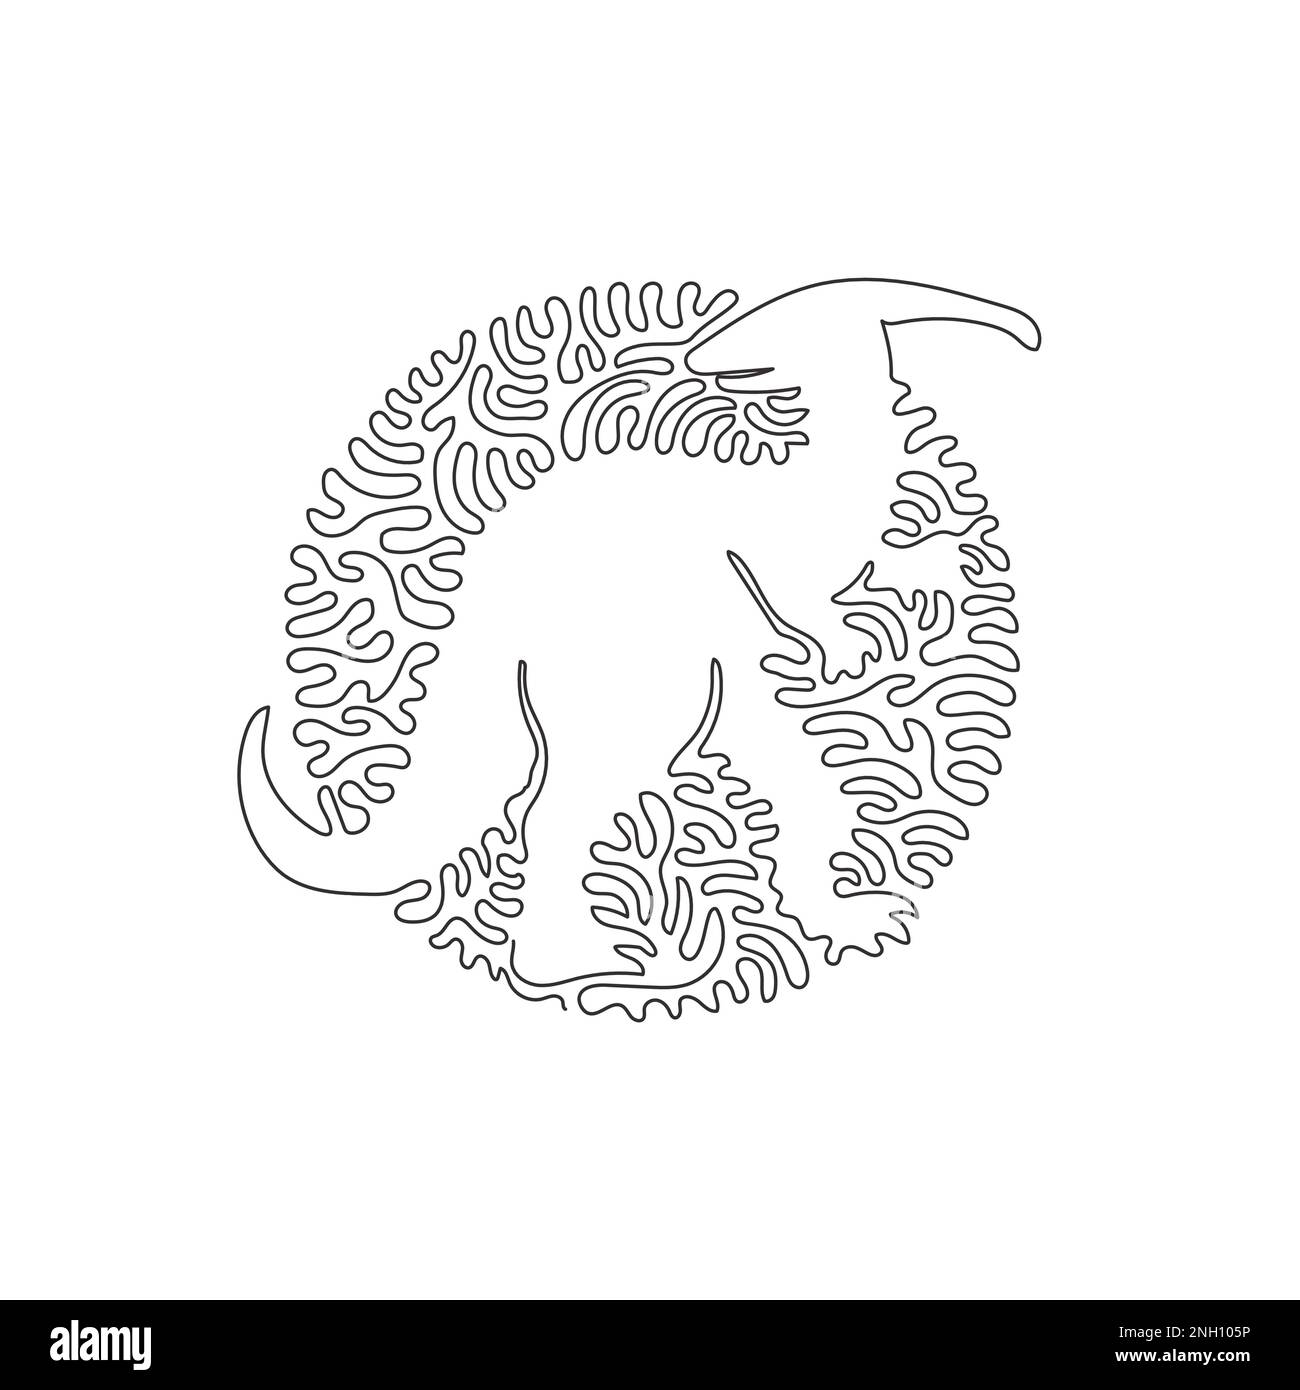 Disegno continuo di una linea curva di disegno astratto del cranio crestato dino Illustrazione del vettore di tratto modificabile a linea singola del dinosauro erbivoro Illustrazione Vettoriale